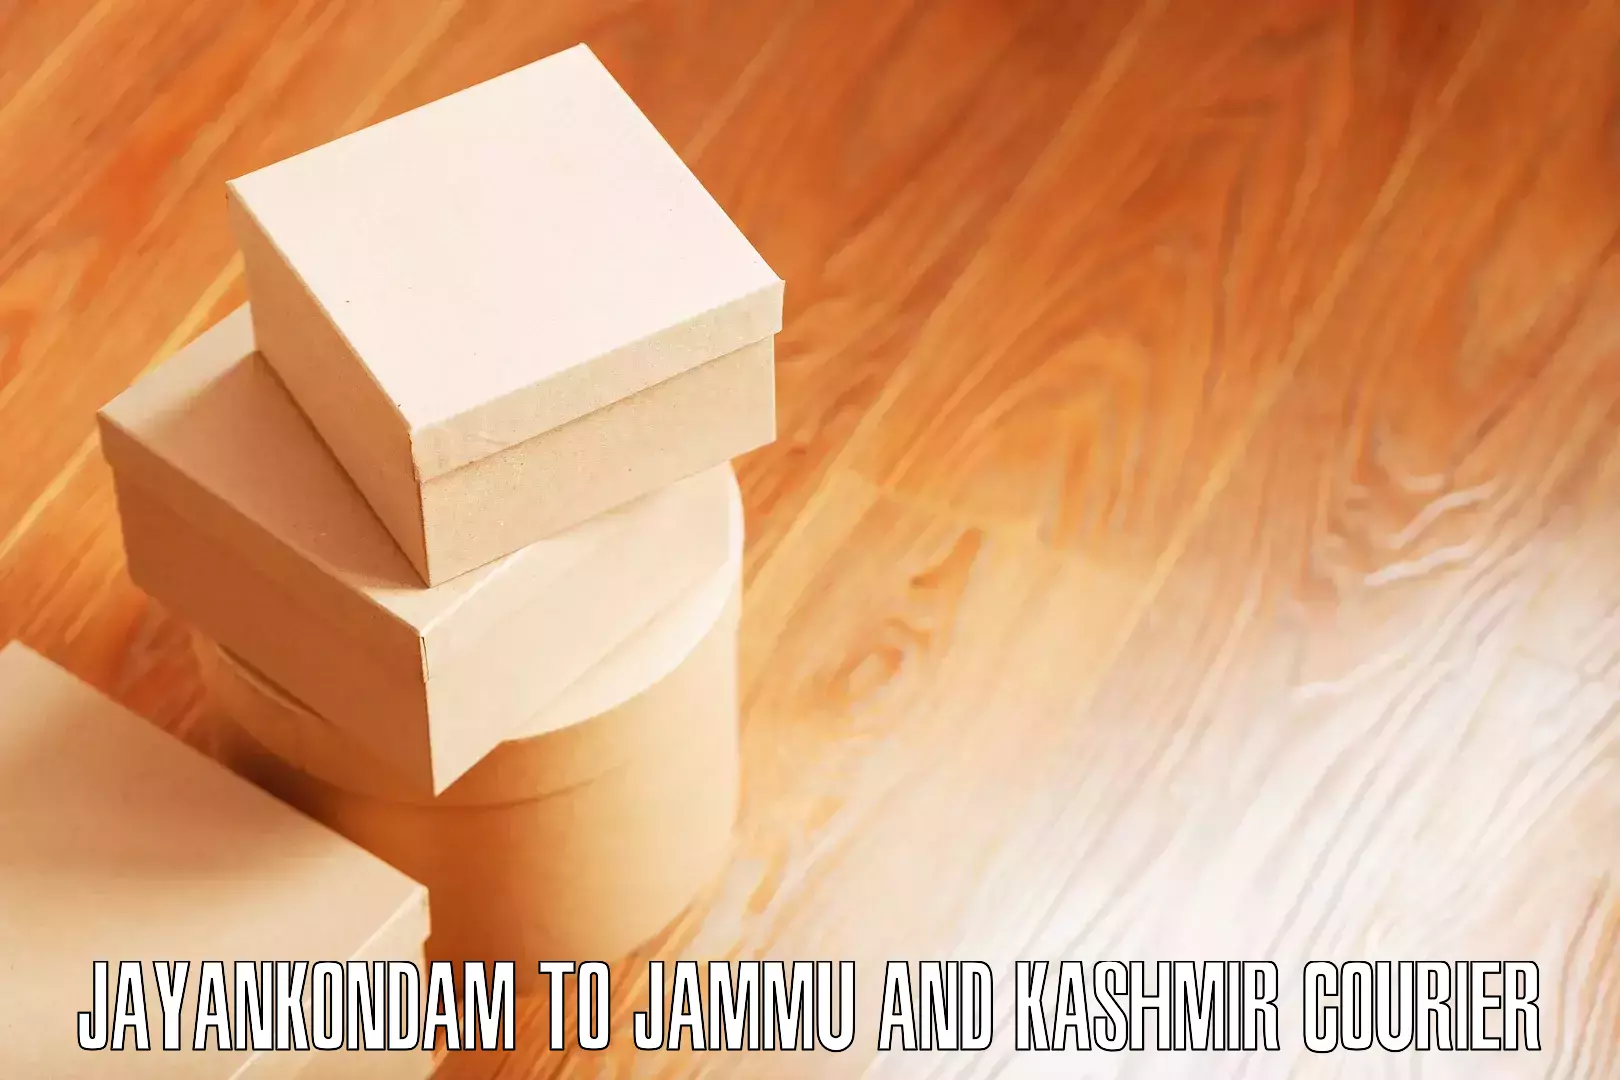 Furniture relocation experts Jayankondam to Ramban